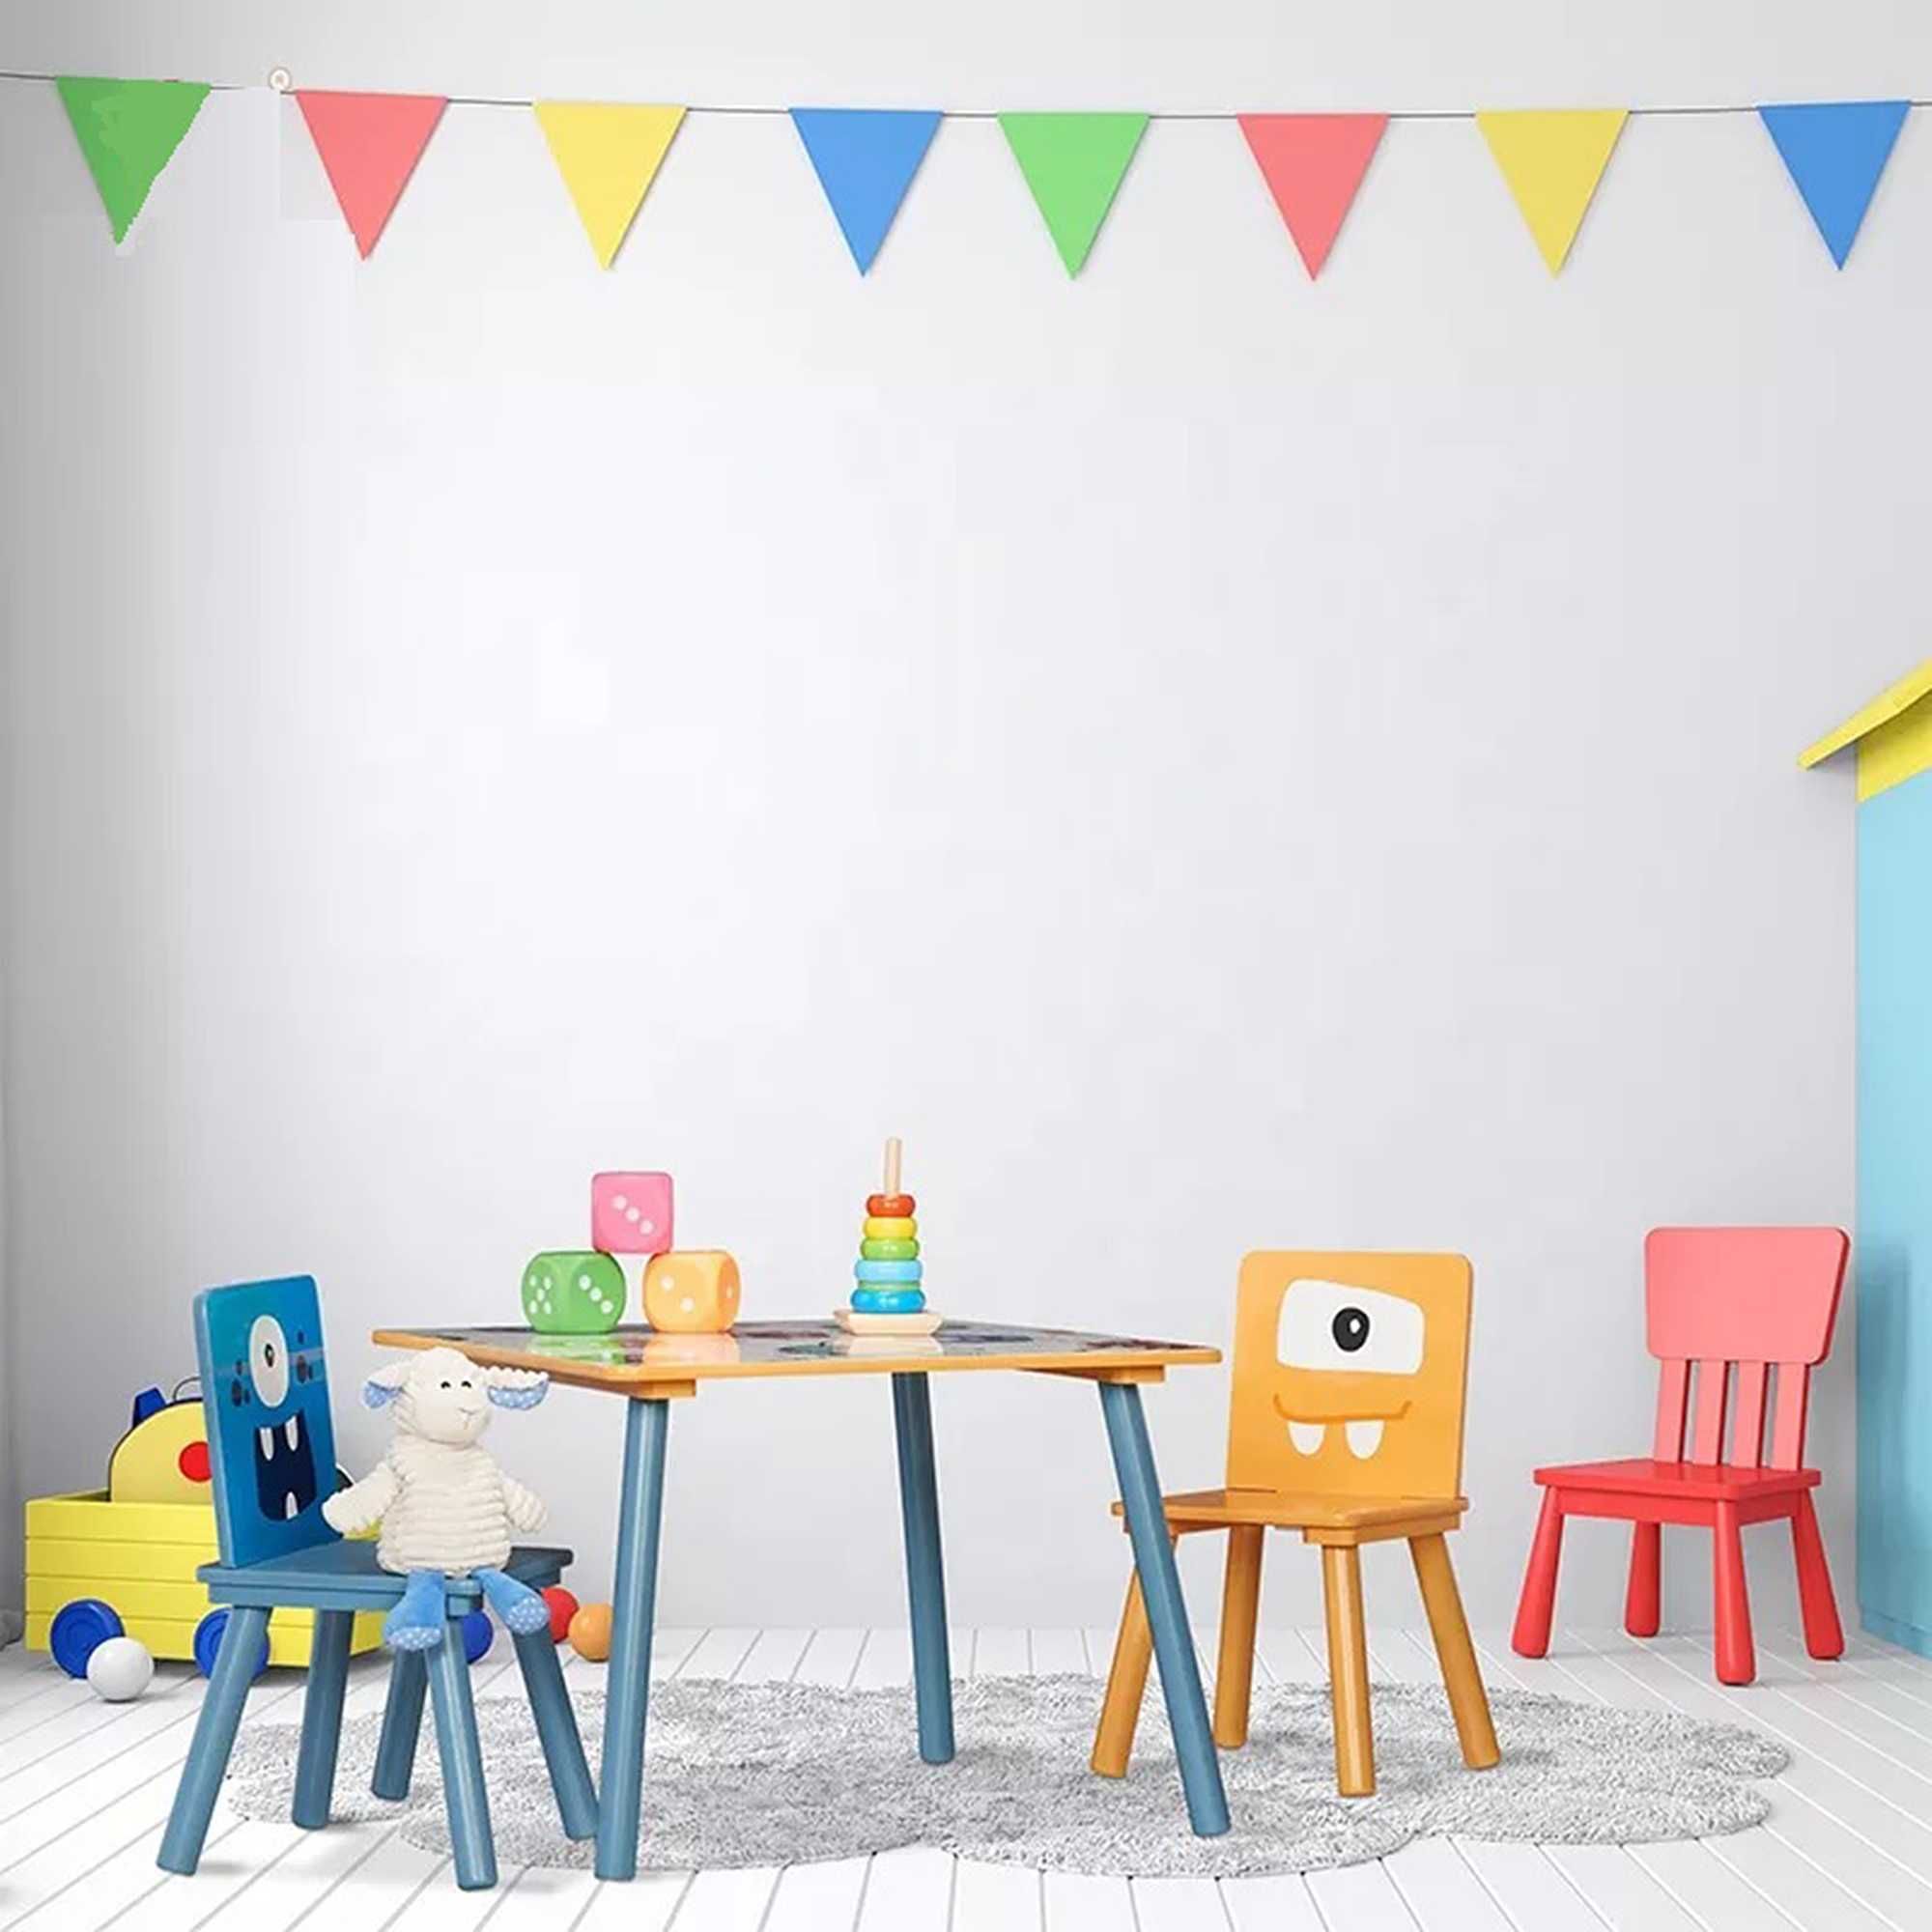 Детска Дървена Маса с 2 Столчета - за Учене, Игра, Рисуване, Хранене